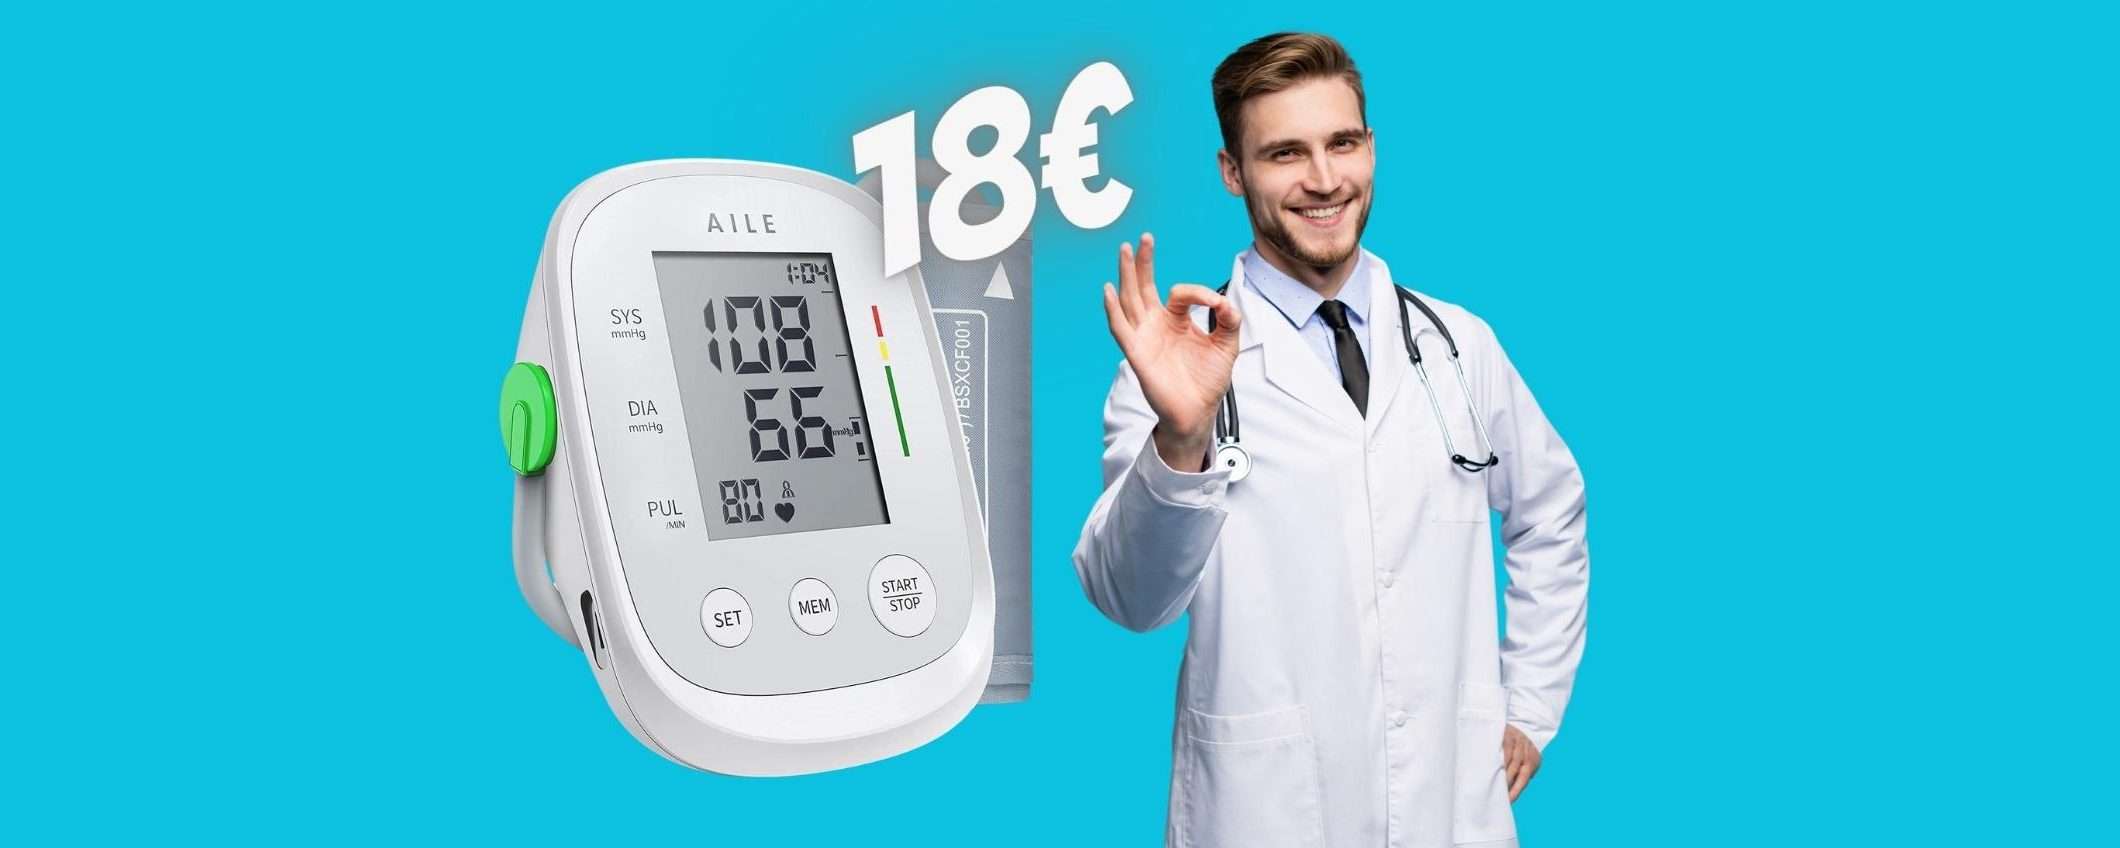 Misuratore di pressione automatico, semplice ed economico (18€)